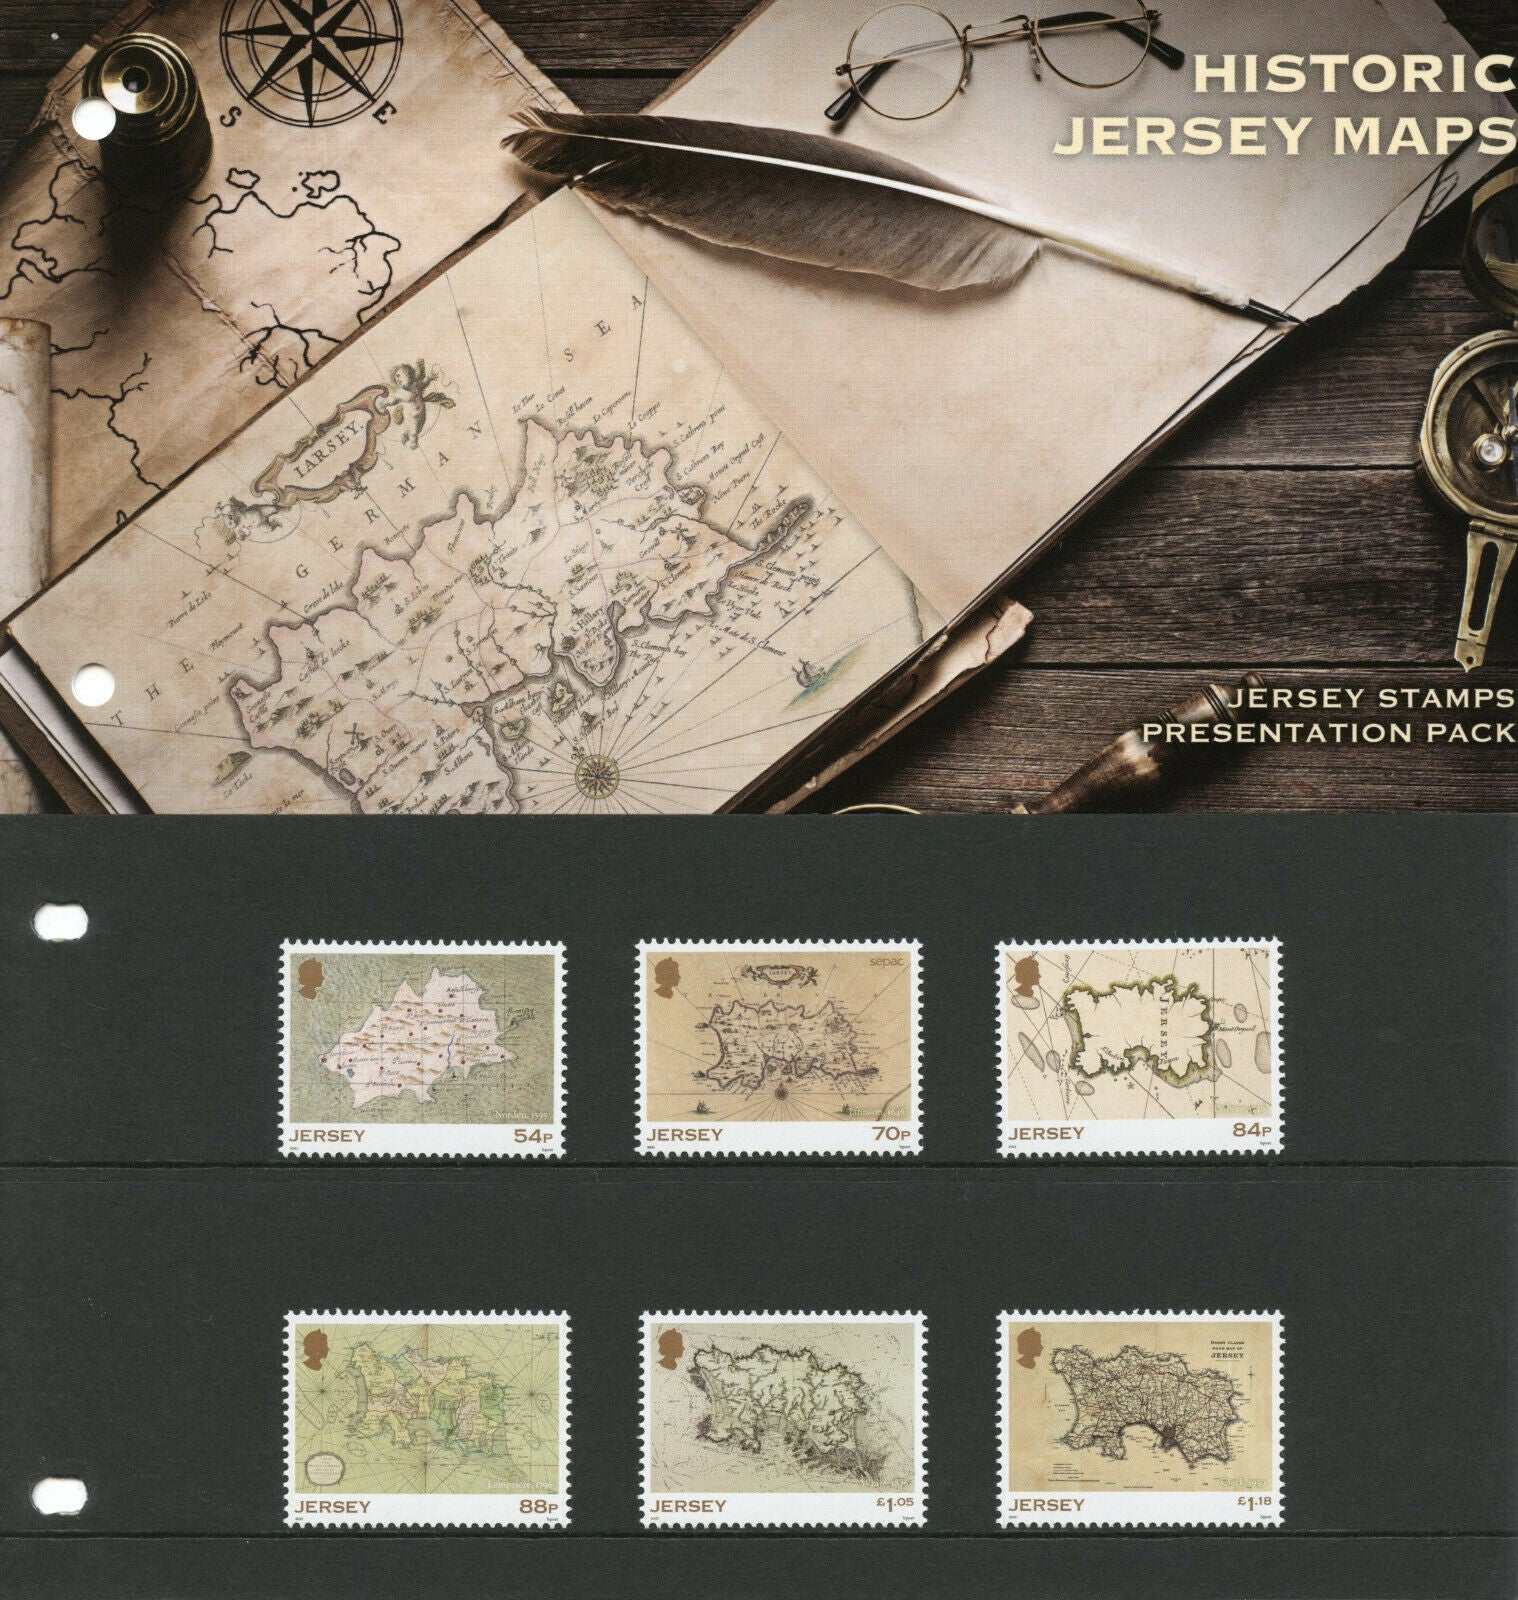 Jersey Cartography Stamps 2021 MNH Historic Jersey Maps 6v Set Presentation Pack